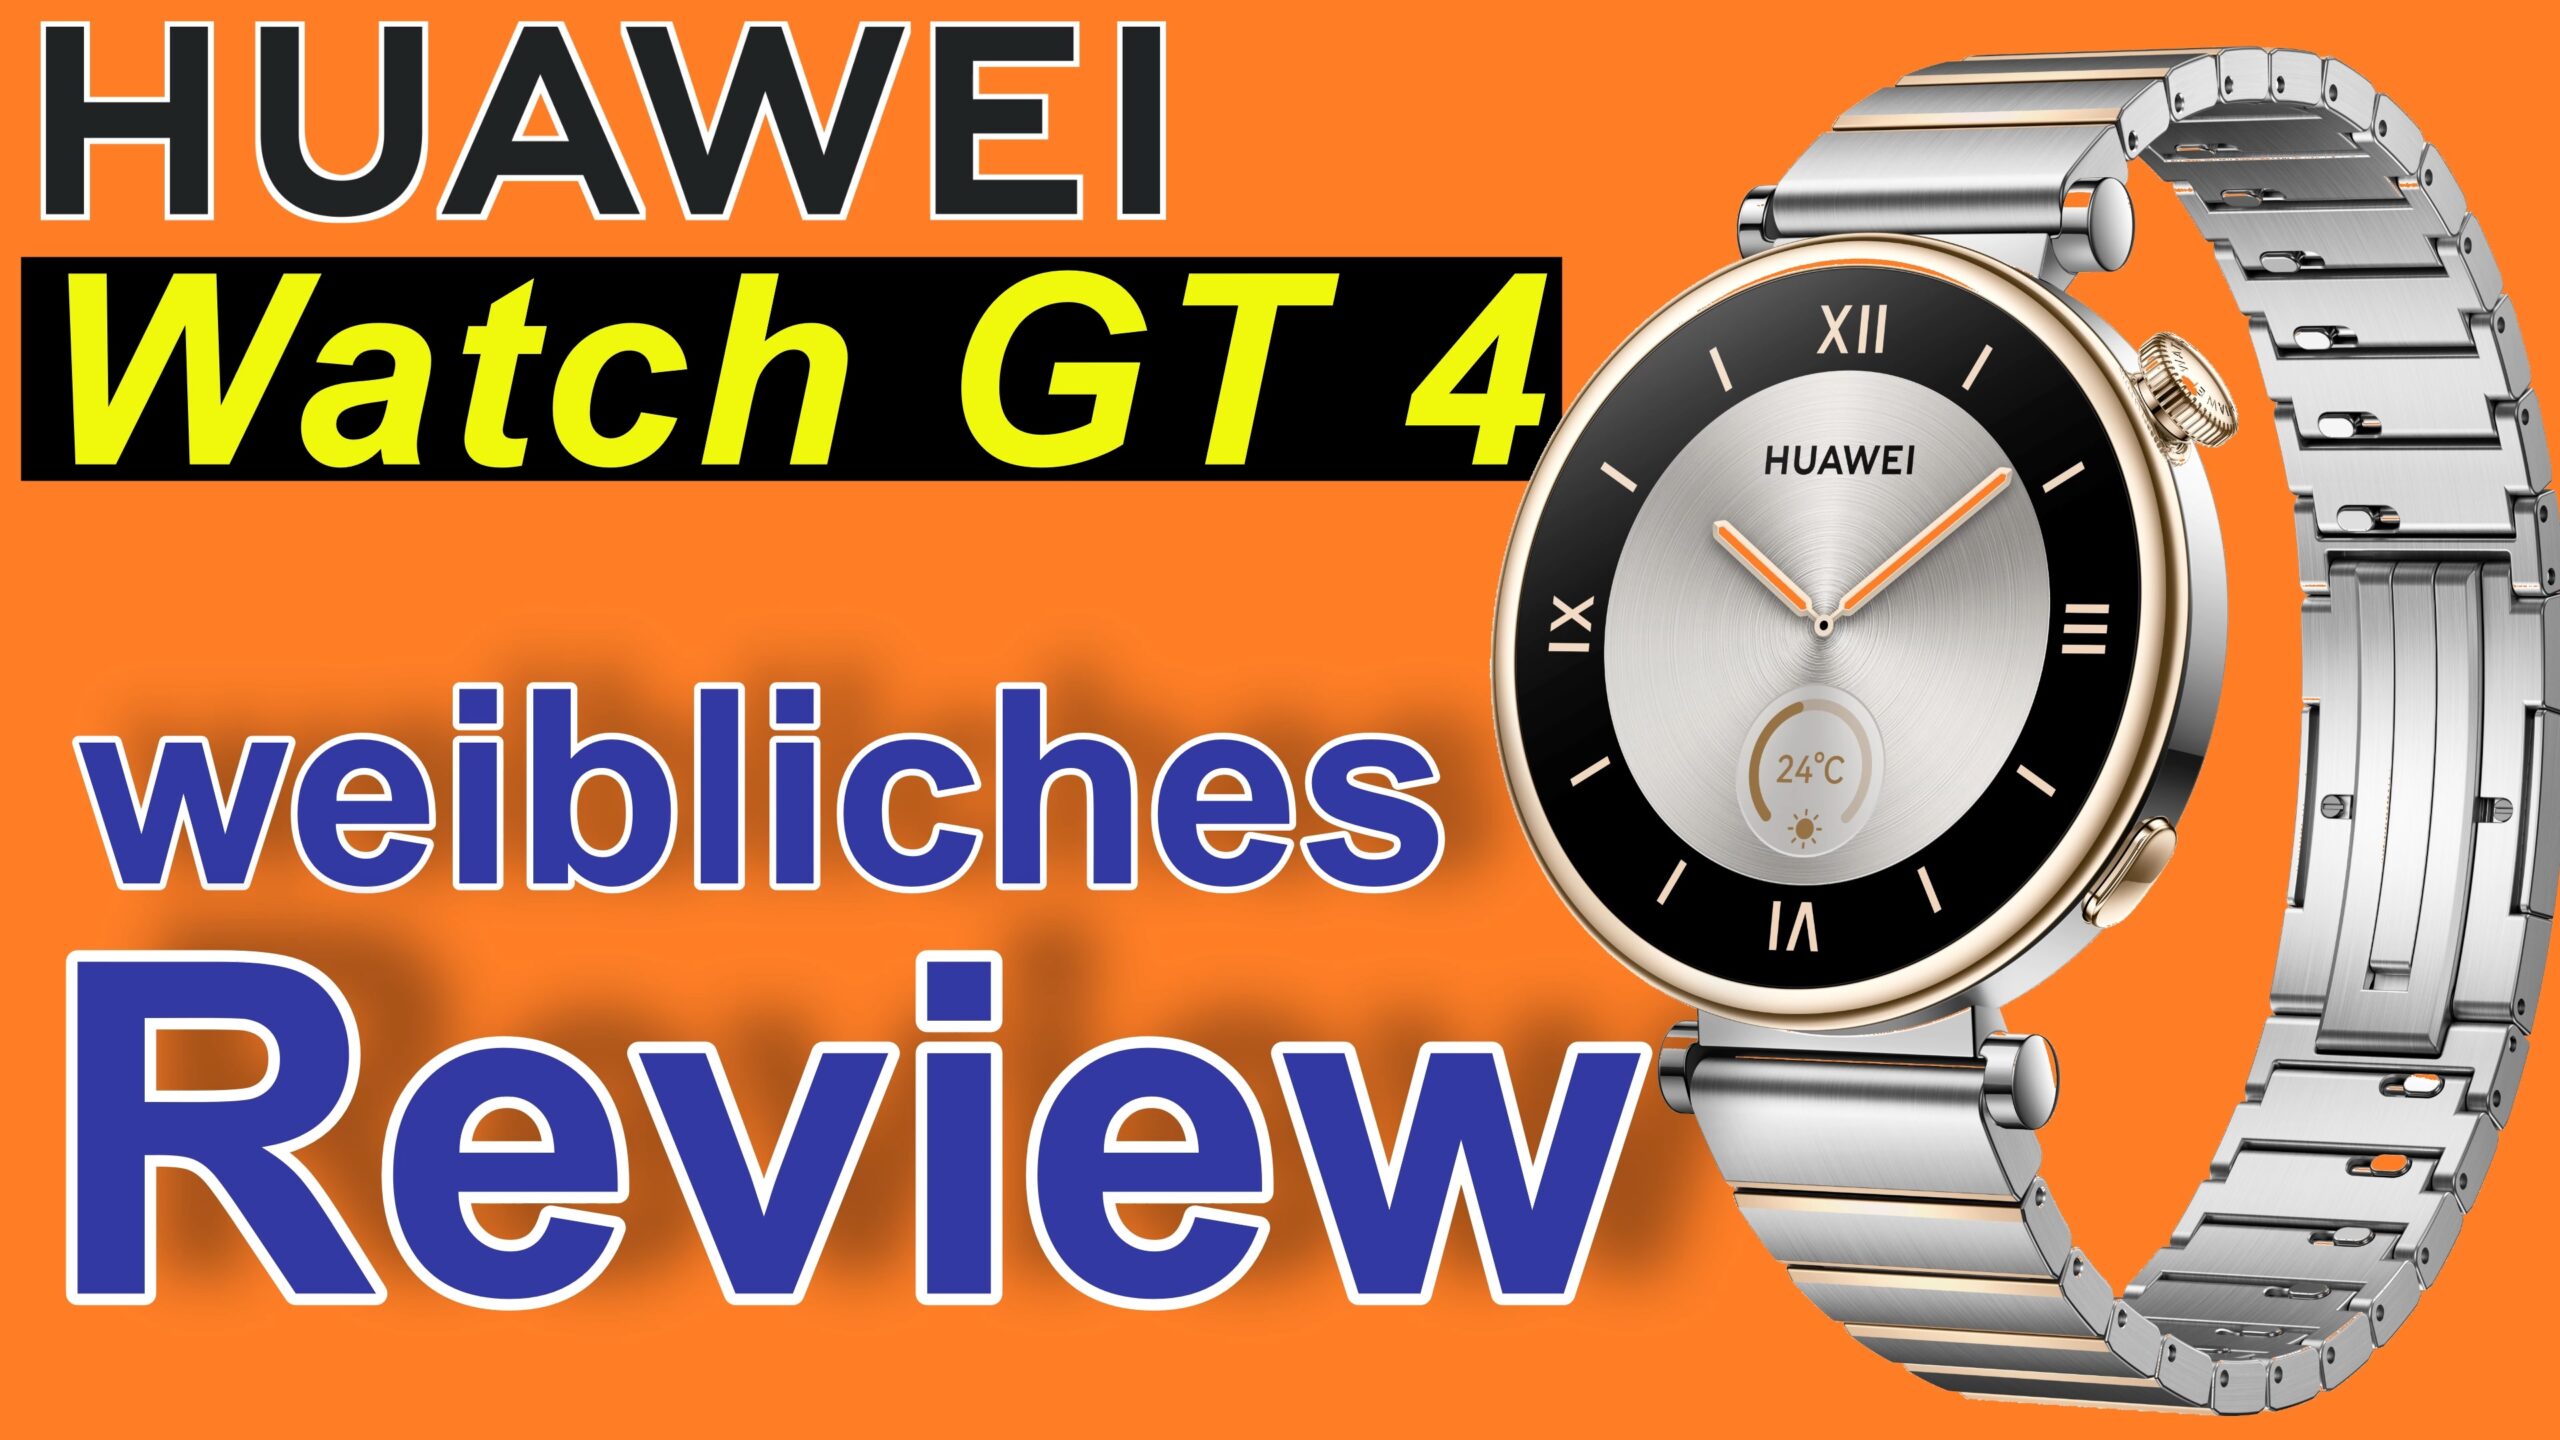 Huawei Watch GT 4 - Review aus Sicht einer Testerin